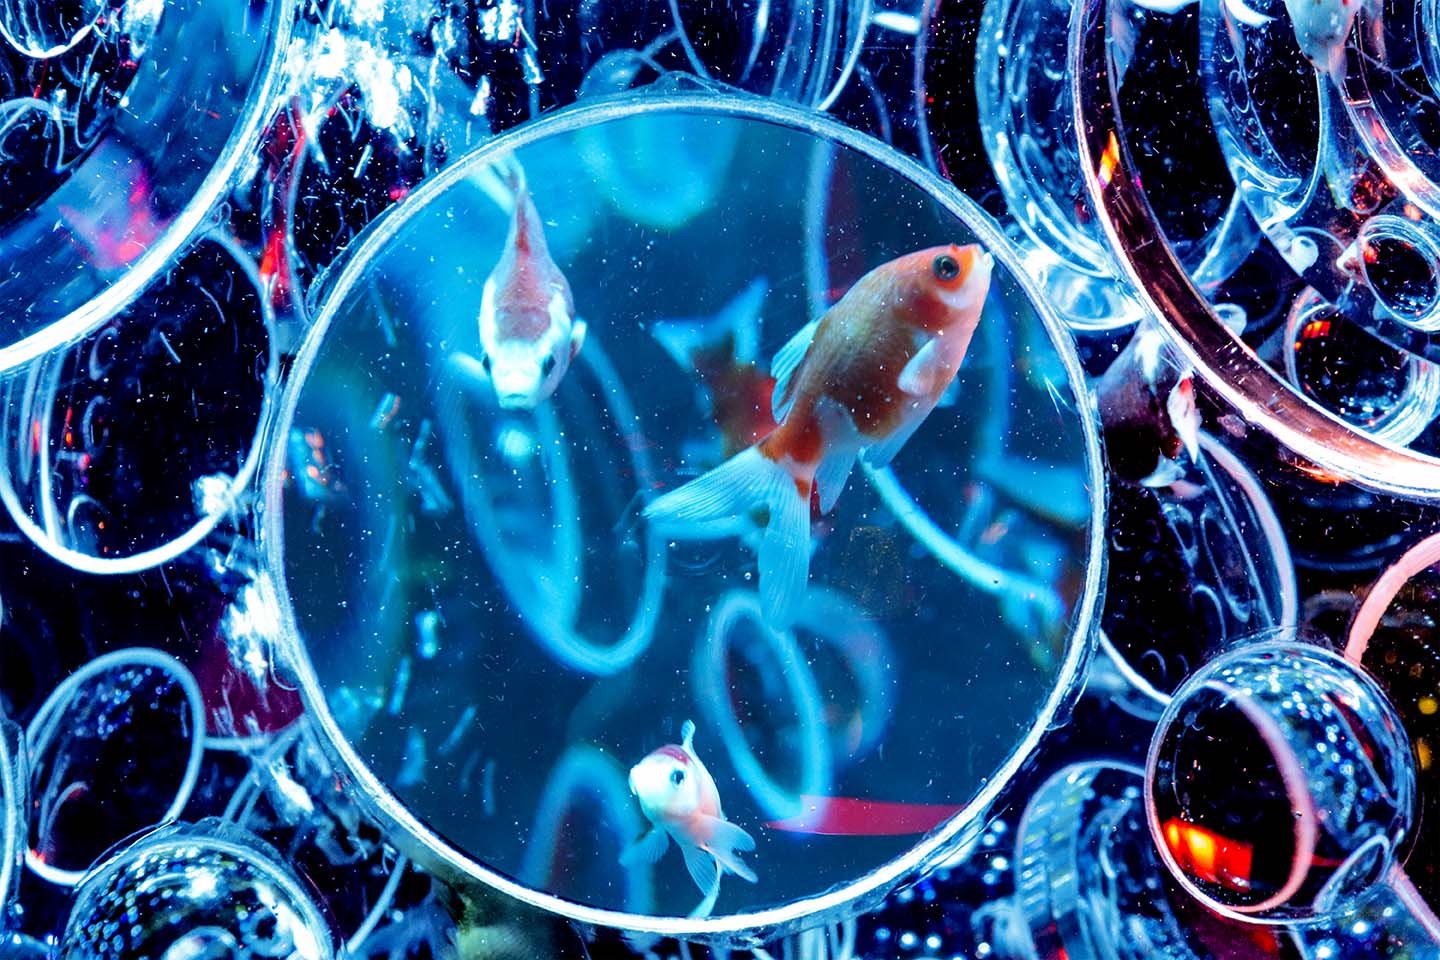 Cyberpunk goldfish at Art Aquarium